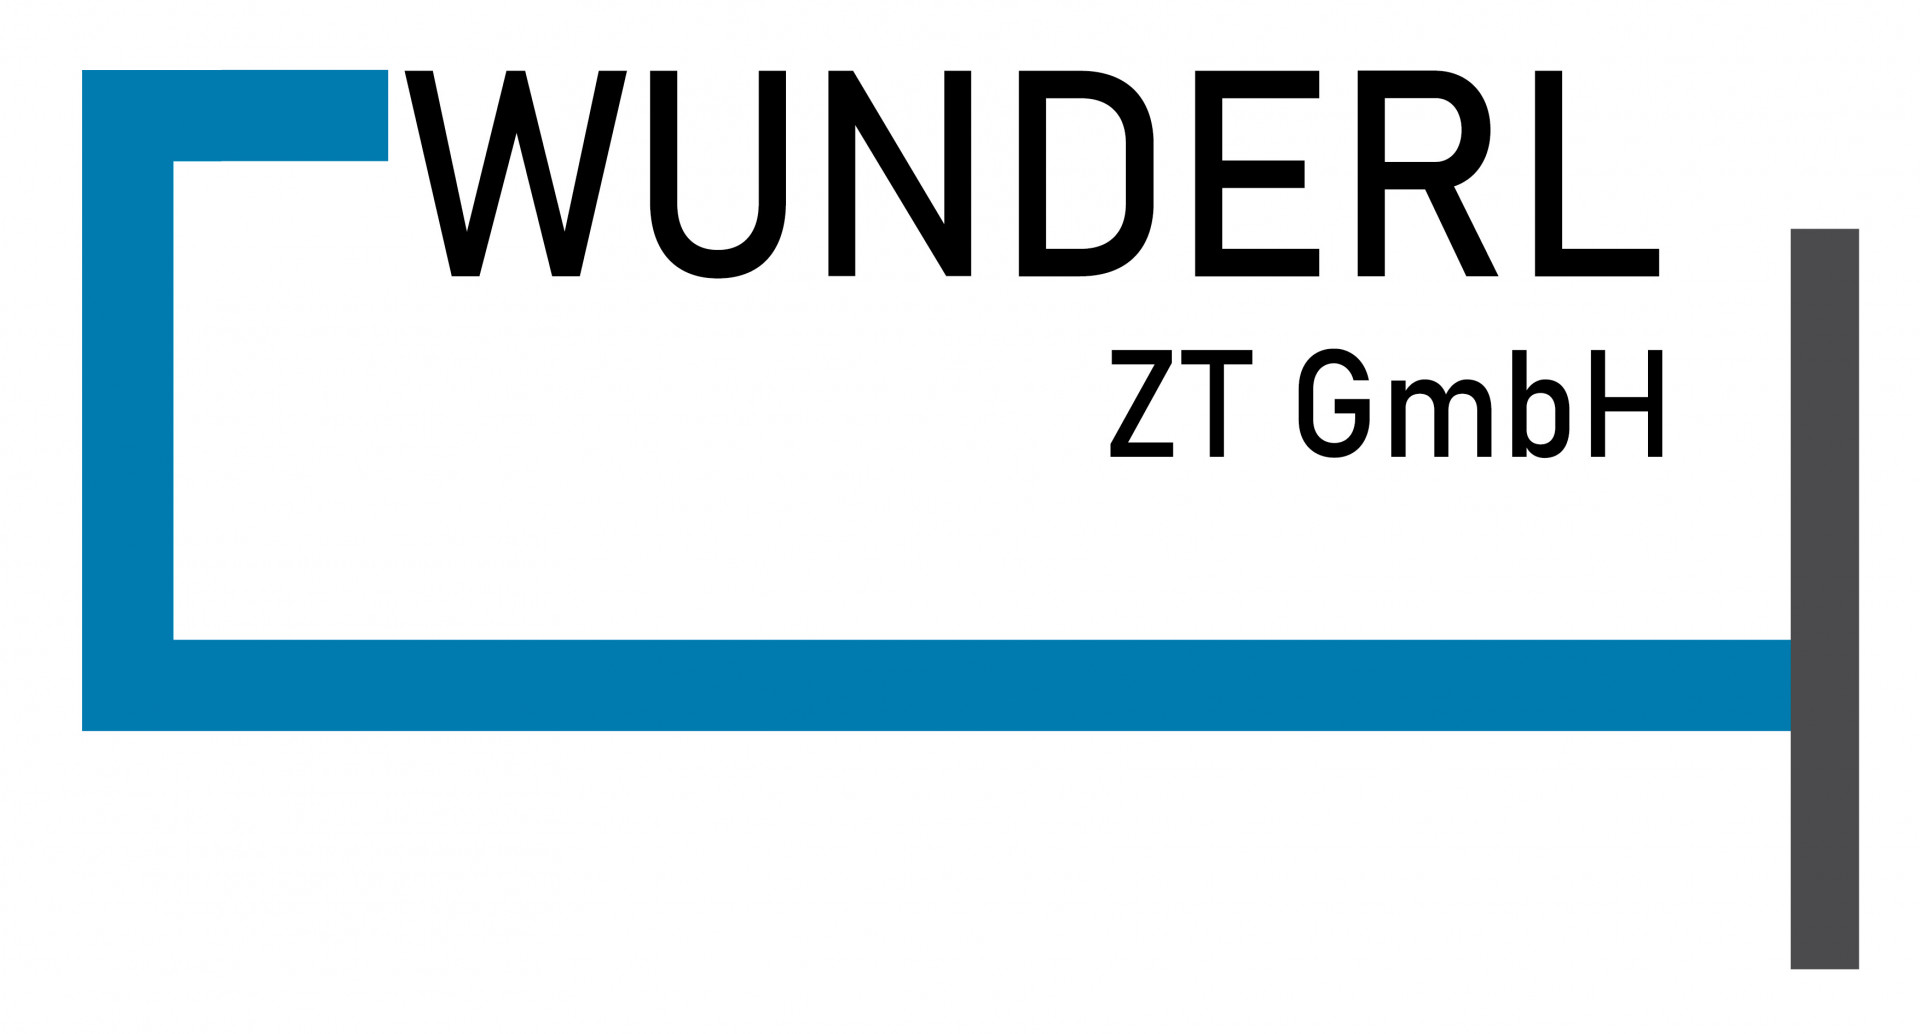 Wunderl ZT GmbH